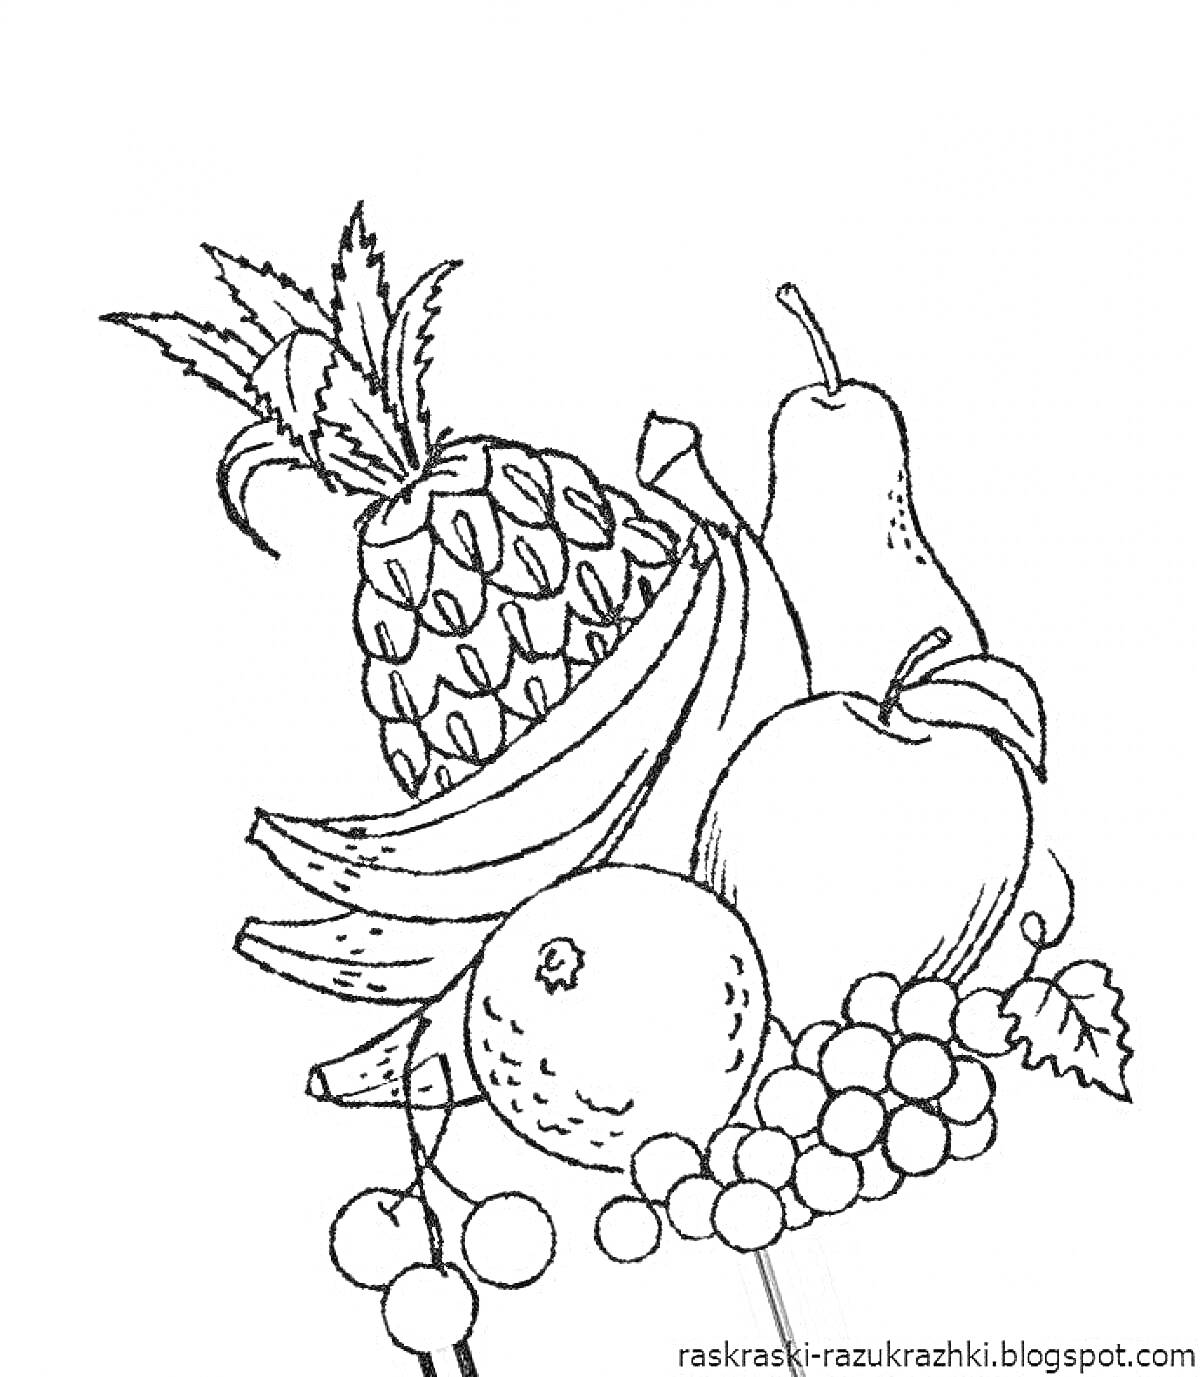 Раскраска Ананас, бананы, груша, яблоко, апельсин, виноград на одной ветке